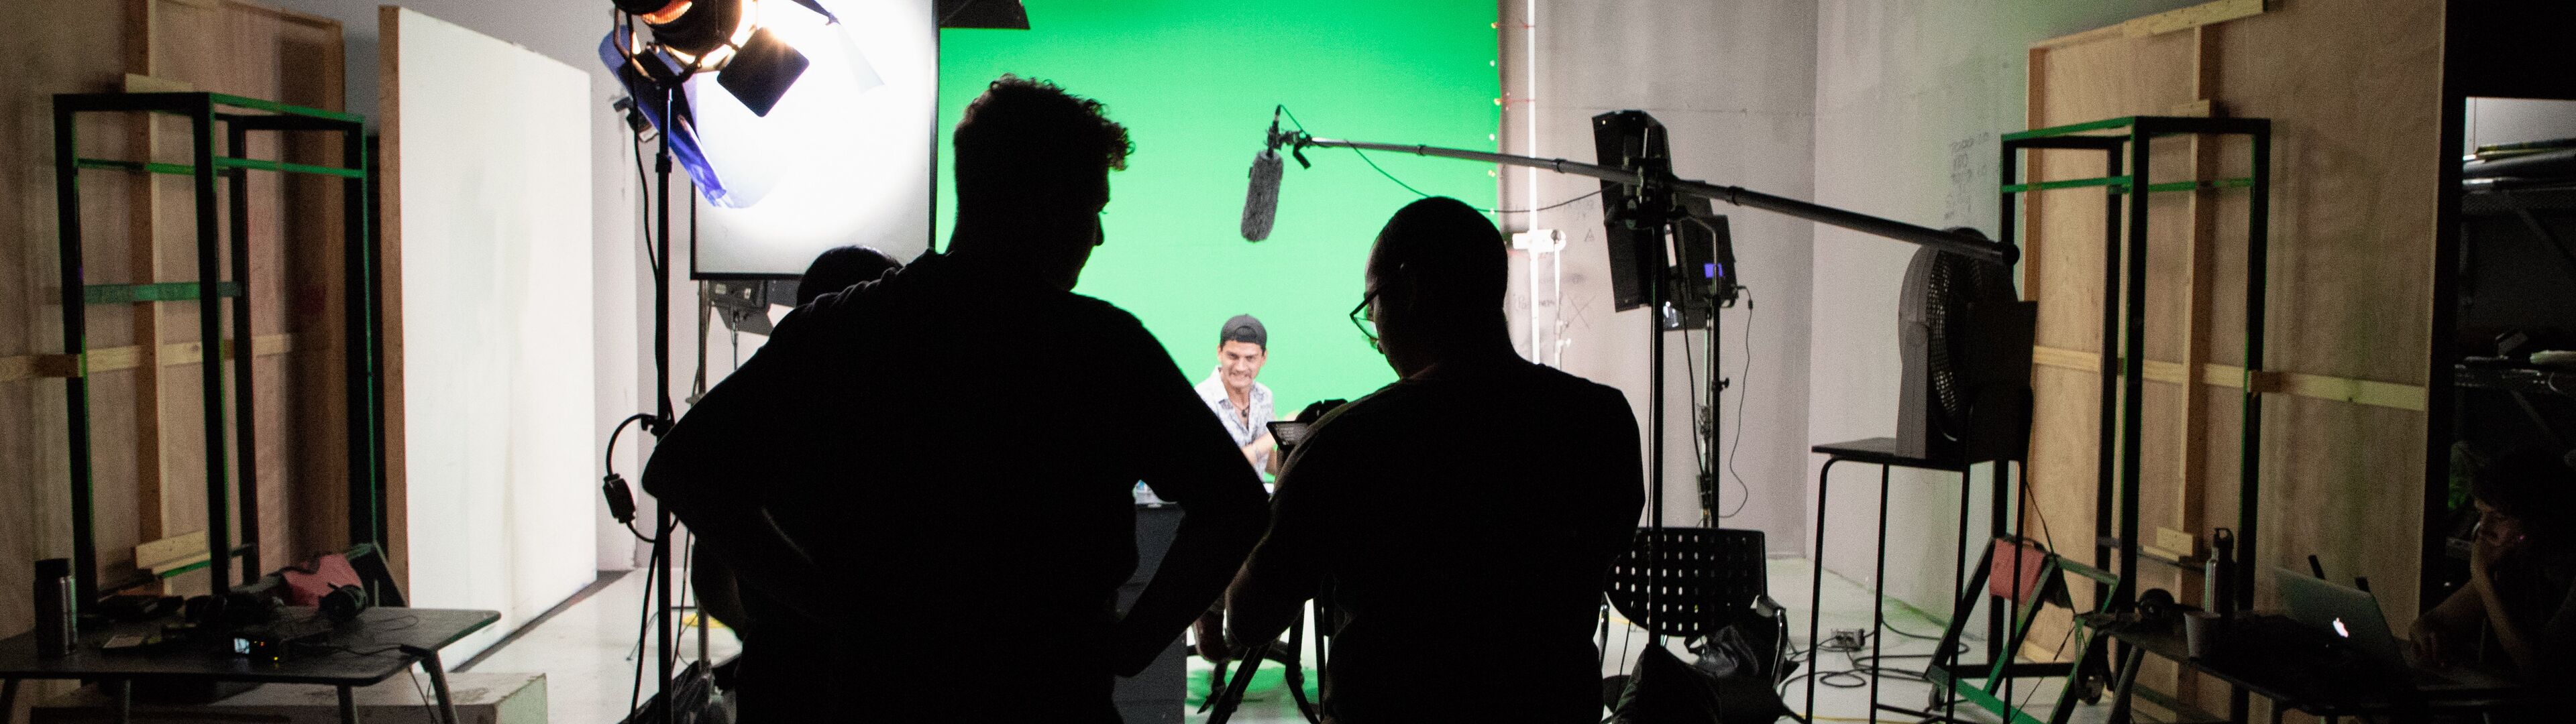 Siluetas de miembros del equipo trabajando en un set de filmación con equipos de iluminación y una pantalla verde.